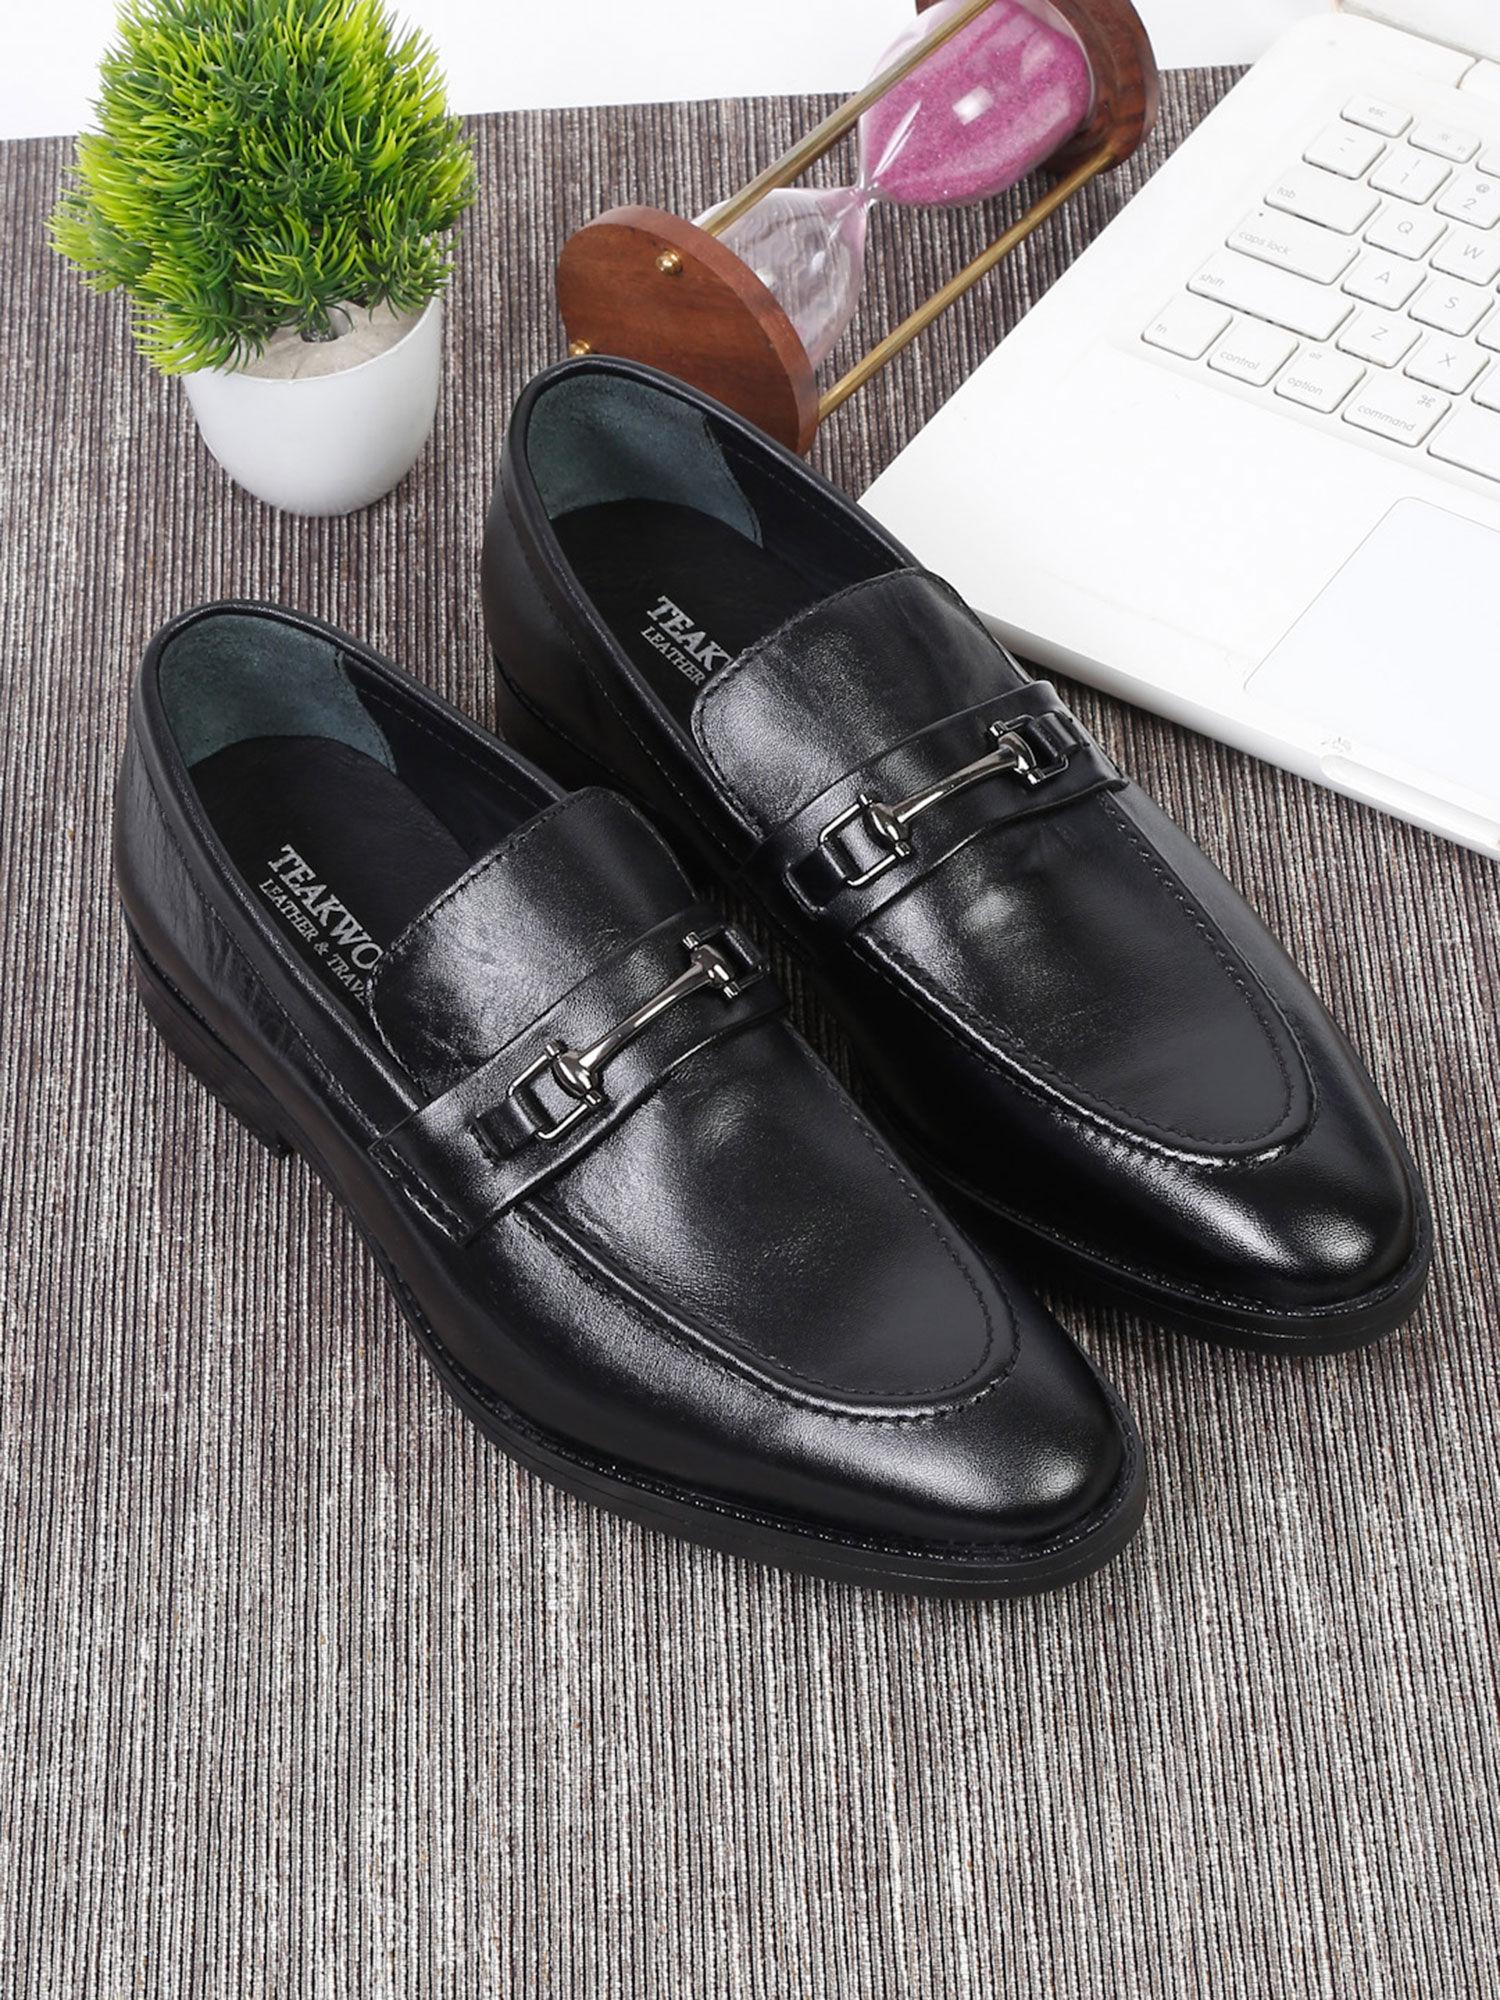 men black solid leather formal slip-on shoes